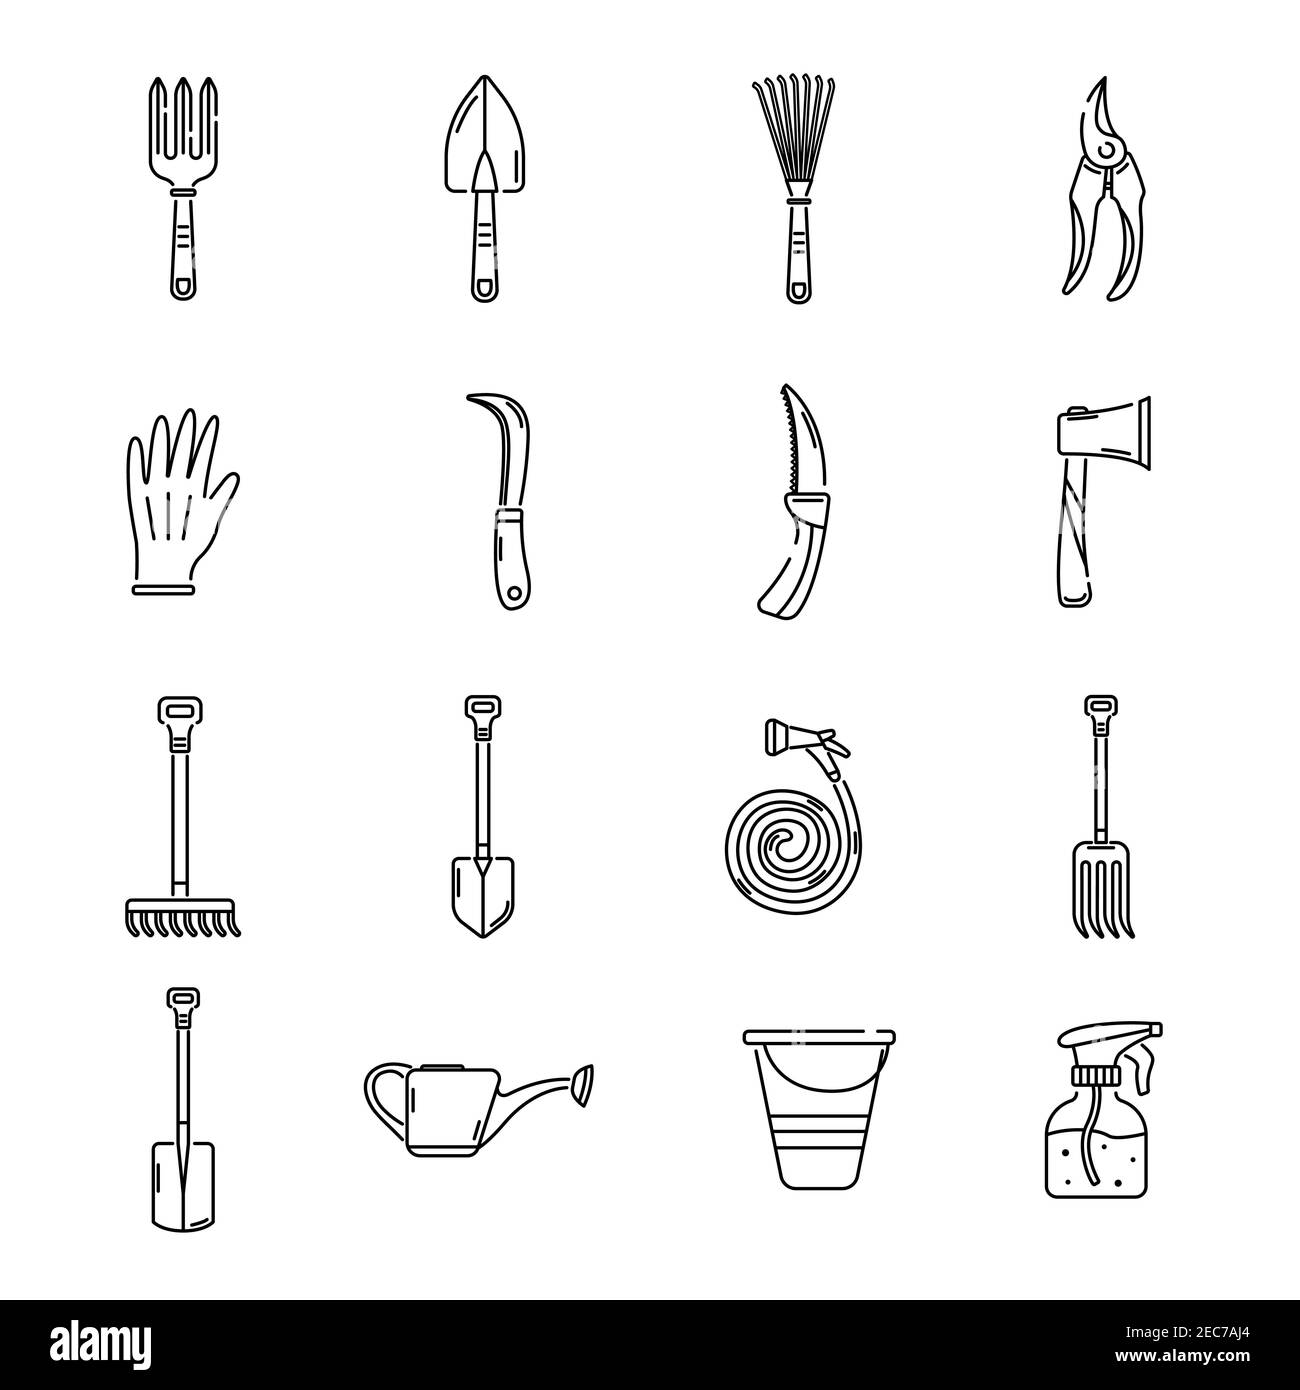 Eine Reihe von Garten-Ikonen, Werkzeuge, Erholung. Einfache Symbole für den Garten. Logo. Stock Vektor